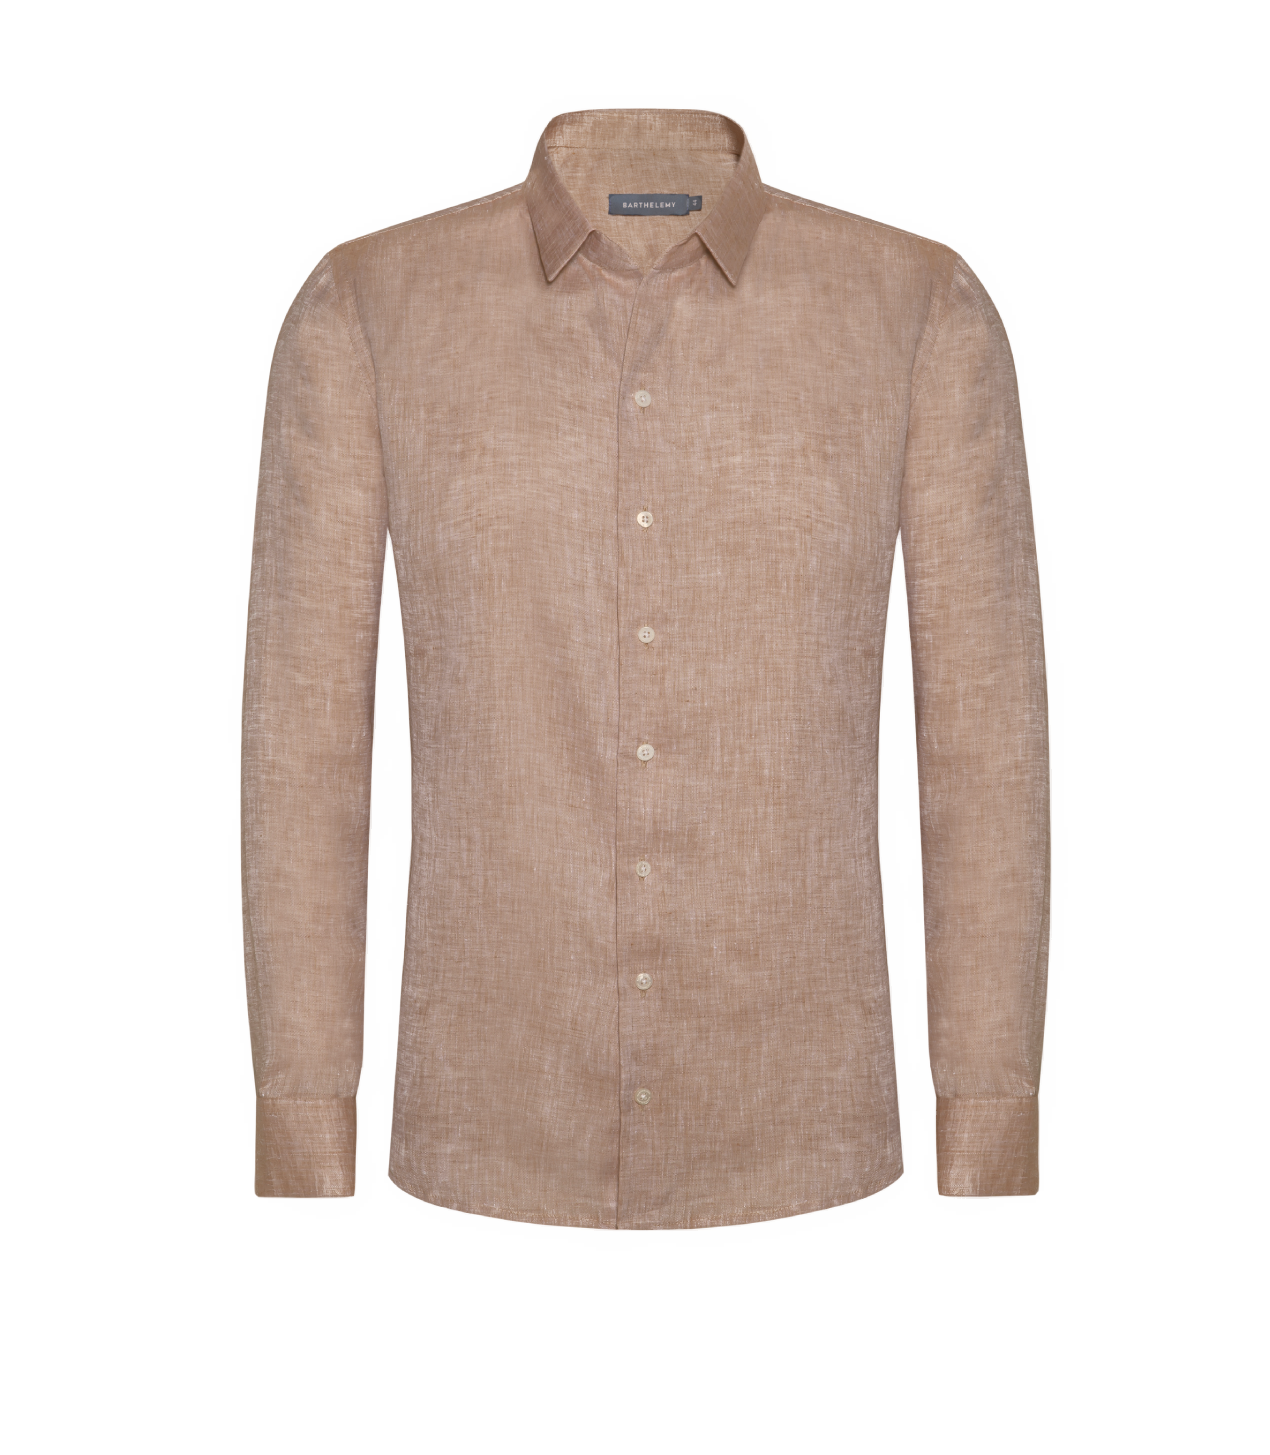 Tailored Linen Shirt Camel - Barthelemy